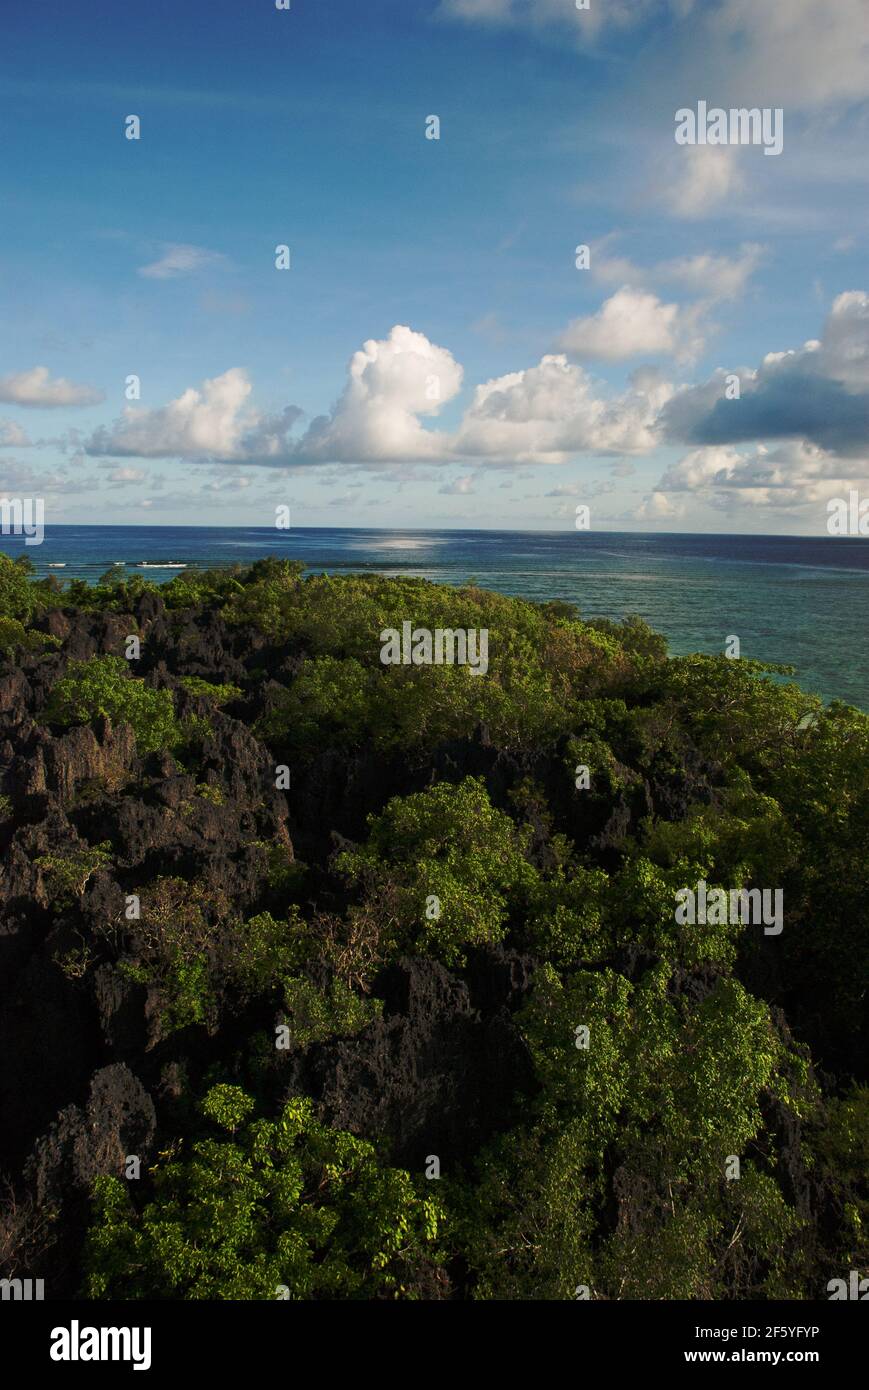 Draufsicht Aufnahme eines Mangrovenwaldes mit einer Lagune irgendwo mitten im Meer. Die herrliche Aussicht ist unter blauem bewölktem Himmel in der Mitte des Th Stockfoto